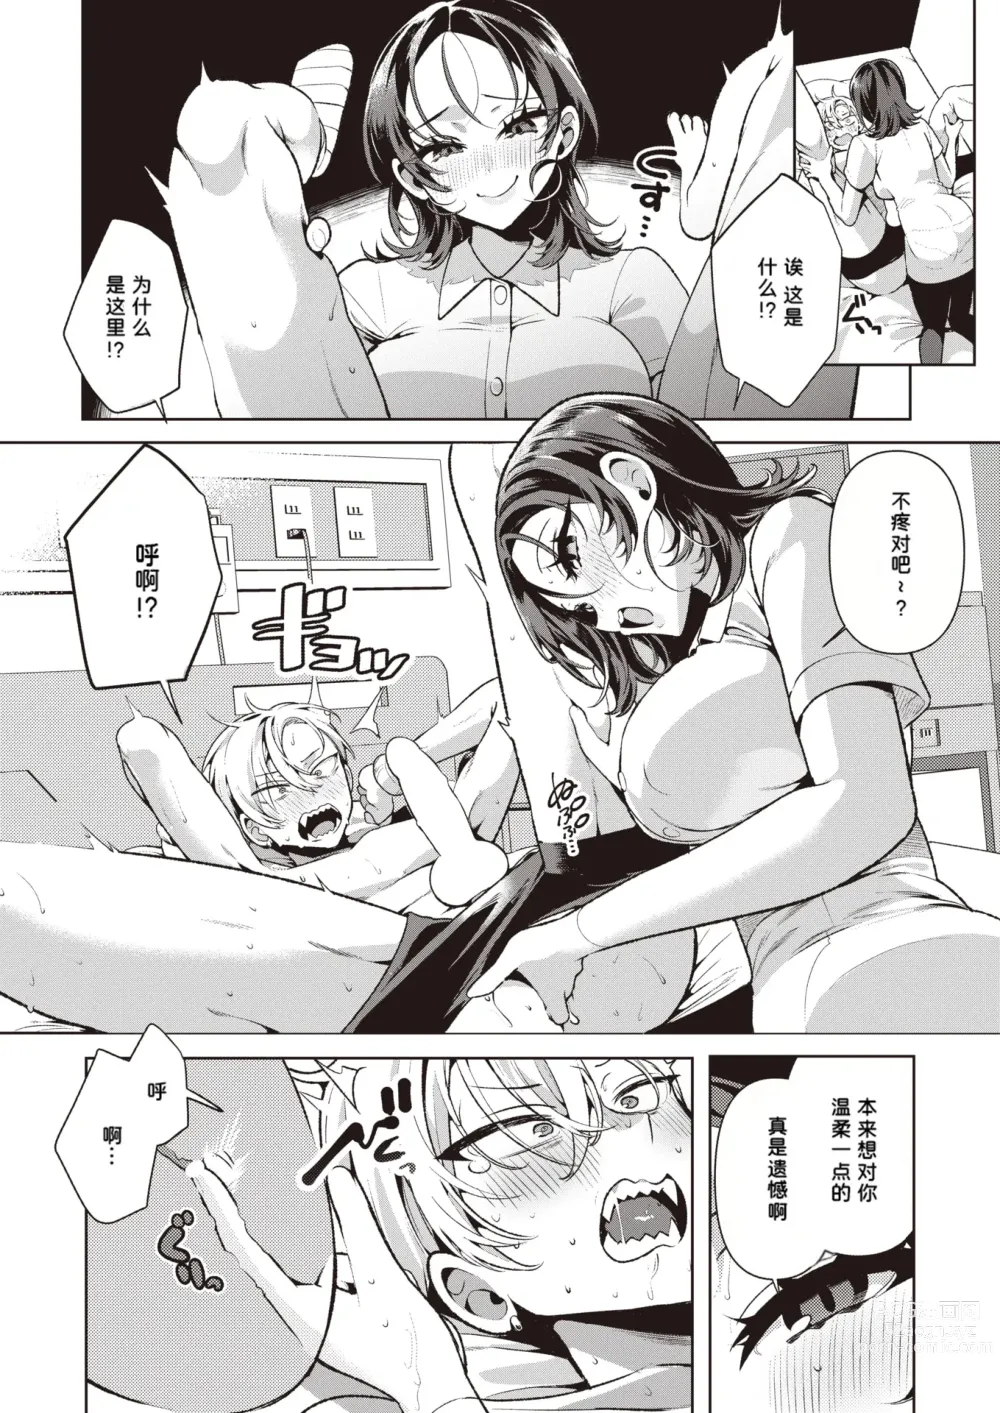 Page 13 of manga Yasashii? Nurse no Kirishima-san